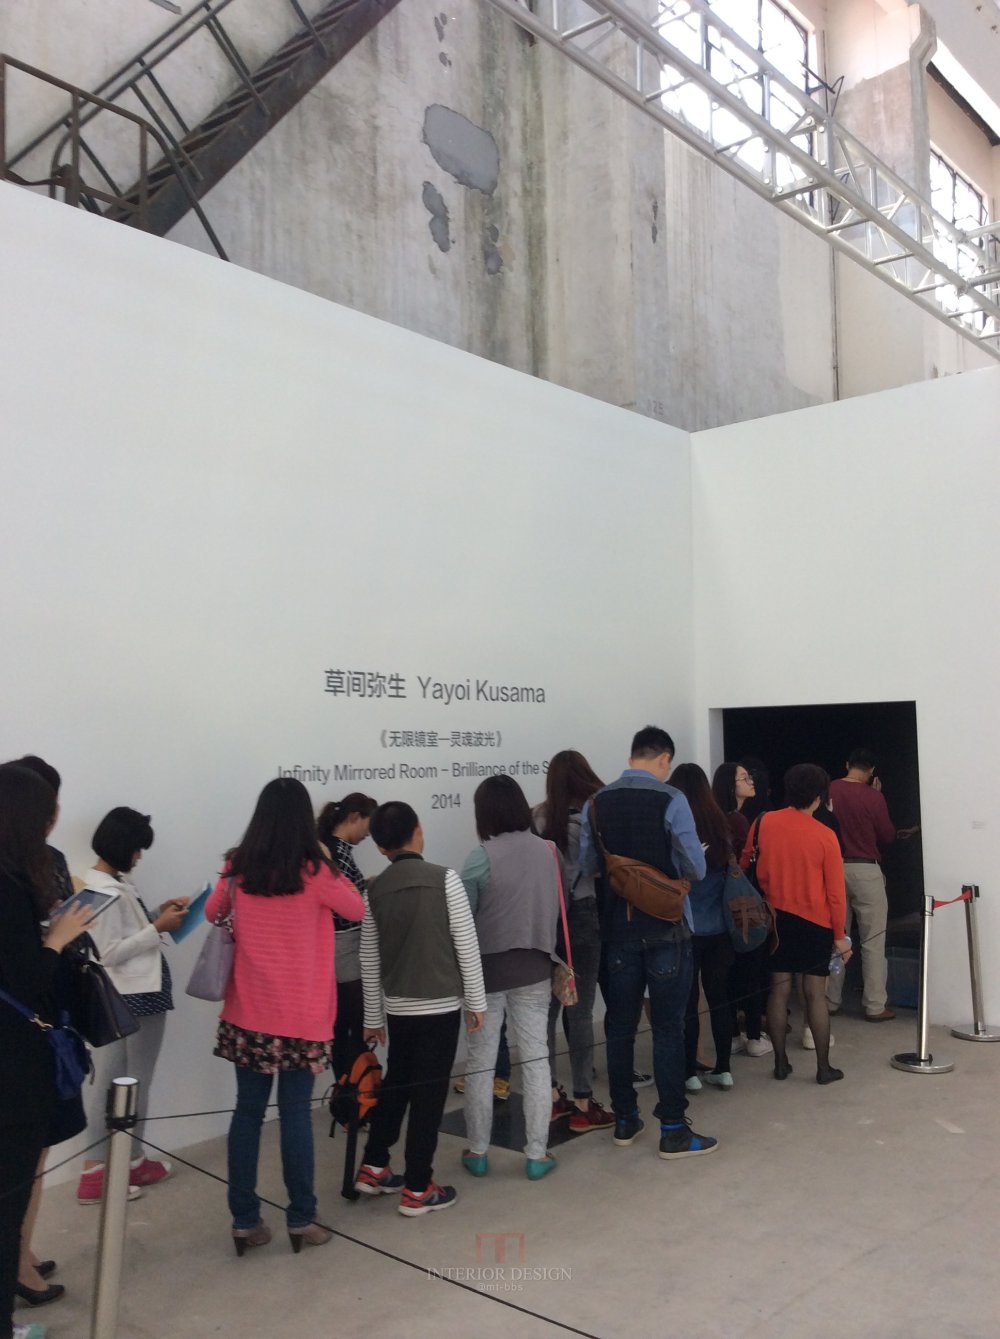 上海西岸艺术设计博览会随手自拍分享给大家_IMG_0741.JPG